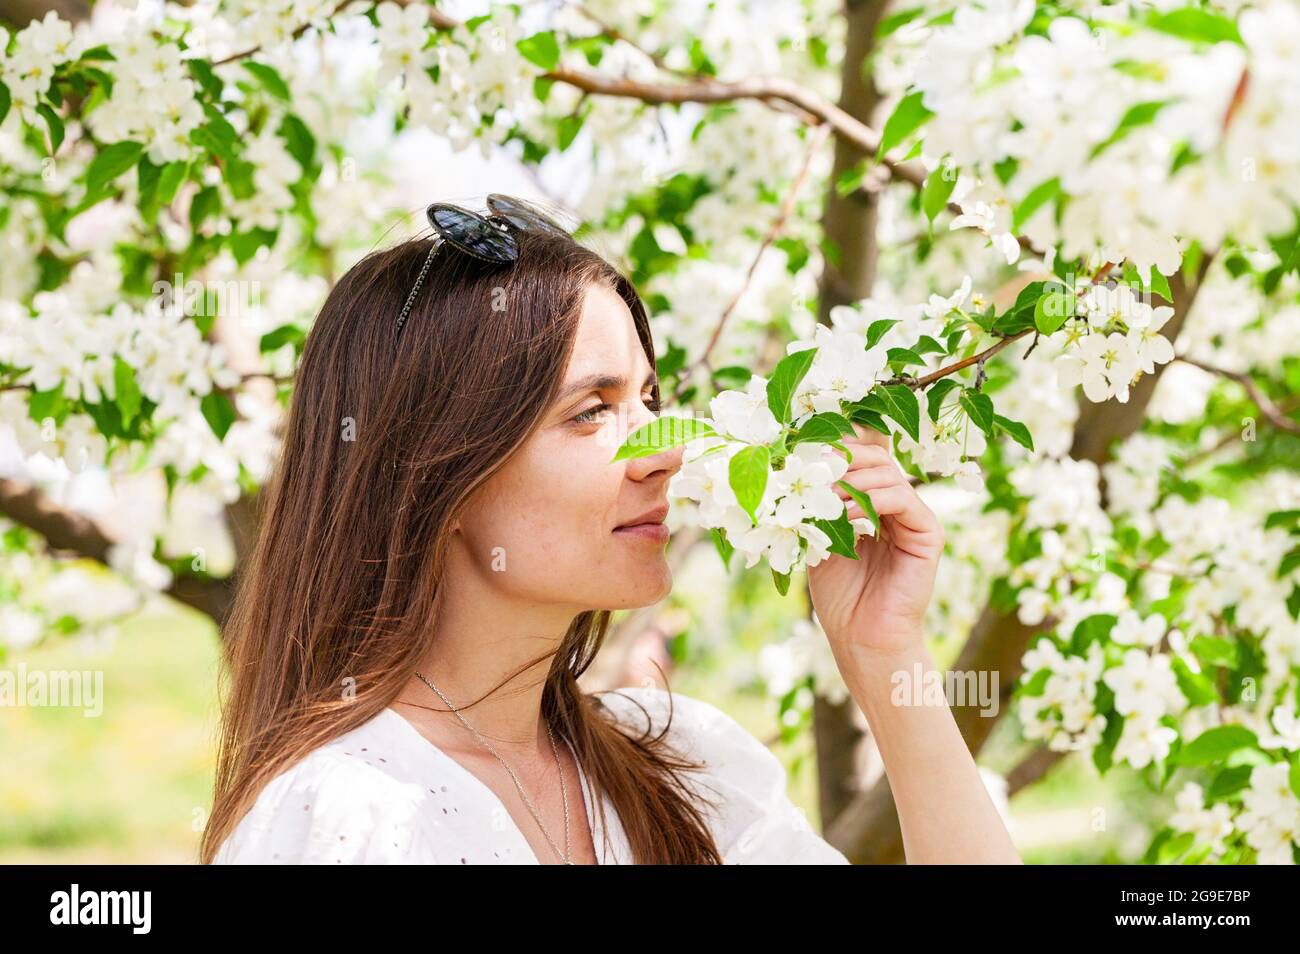 Lächelnd und glücklich posiert das Weibchen in weißen Kleidern. Fröhliche hübsche Frau auf Apfelbaum Hintergrund. Junge kaukasische Frau. Attraktiv und b Stockfoto